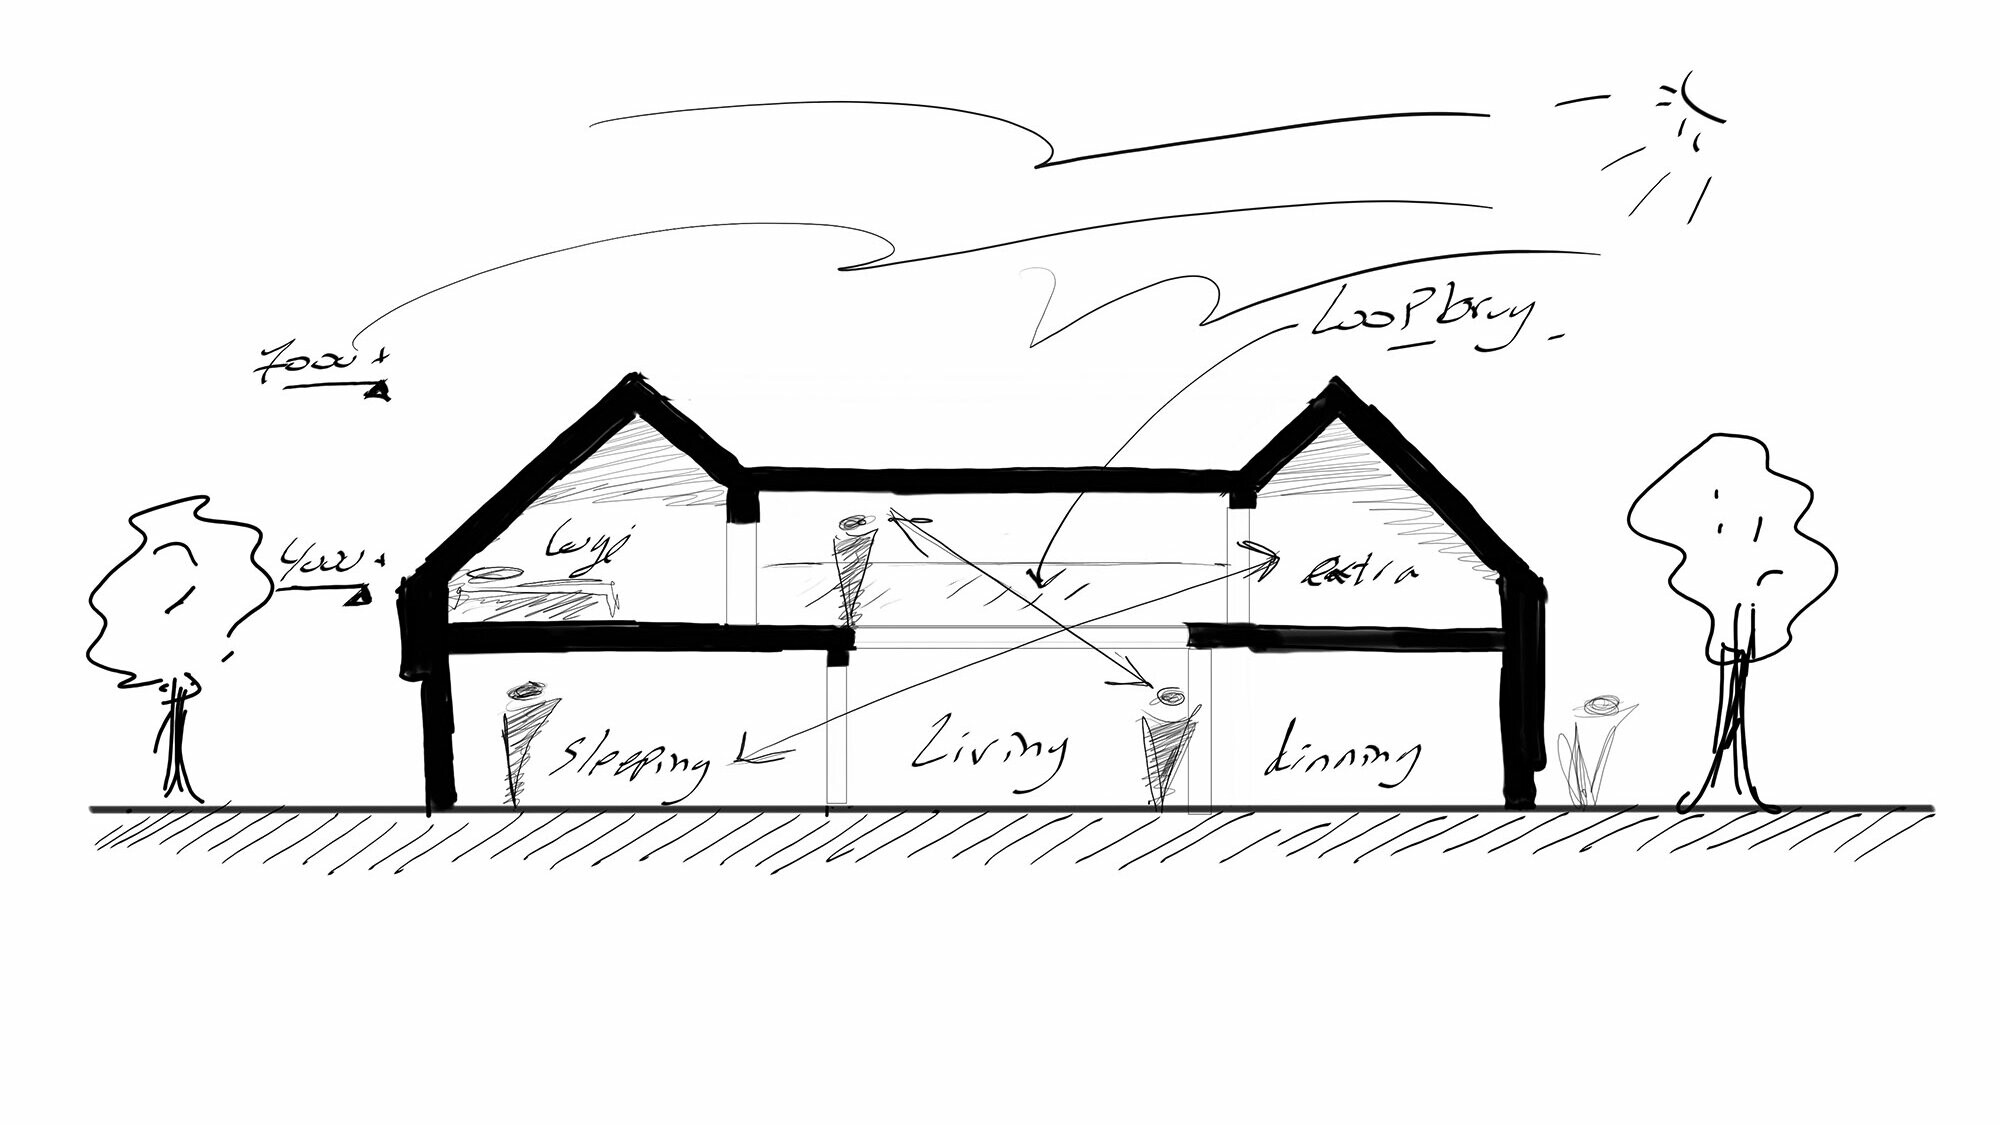 Eine skizzenhafte Darstellung eines zweistöckigen Einfamilienhauses mit einer beschrifteten Raumaufteilung. Das Haus hat ein Satteldach, mehrere Fenster und Schornsteine, und ist umgeben von zwei Bäumen. Die Aufteilung umfasst einen Wohnbereich, eine Bibliothek, Schlafräume und eine Küche.